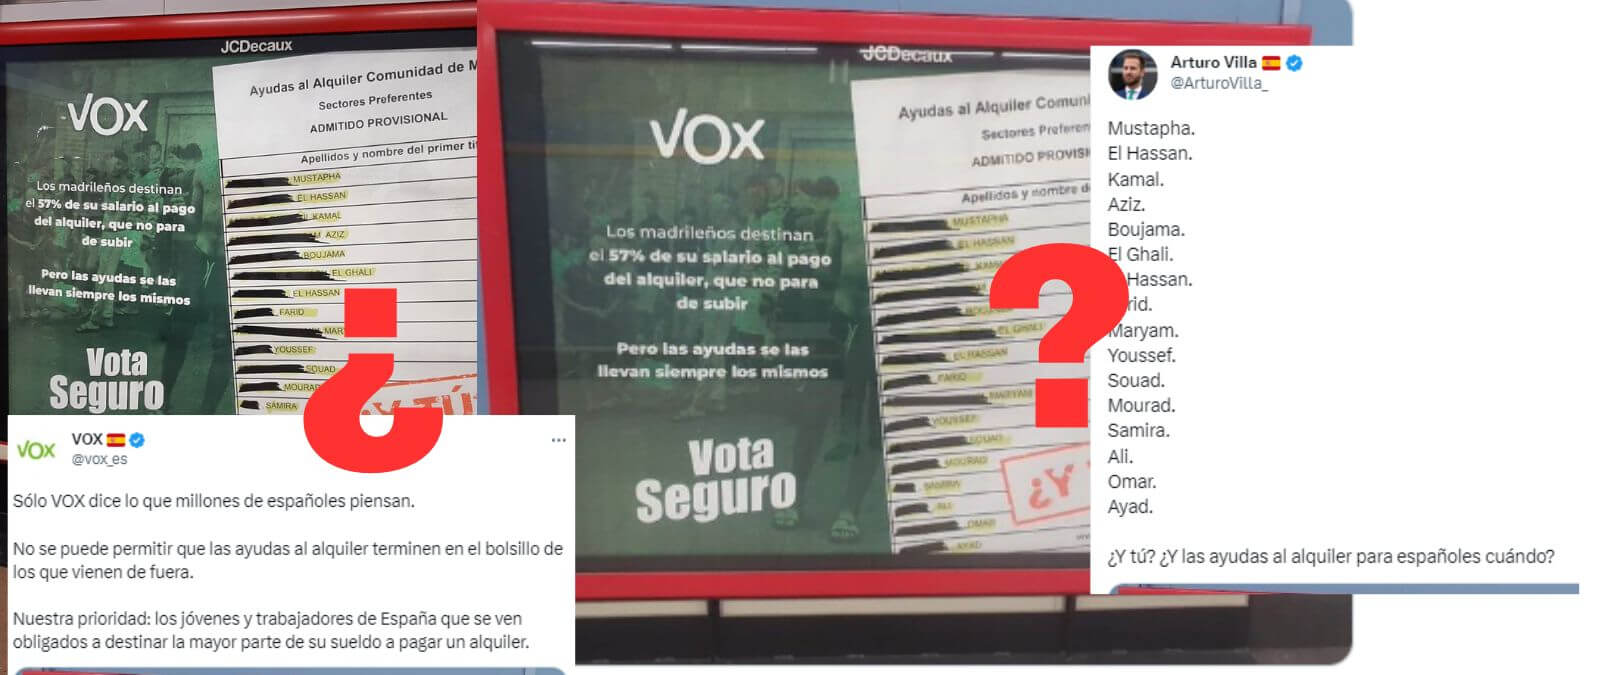 ¿Qué sabemos del cartel de las ayudas al alquiler de la Comunidad de Madrid que ha colgado Vox?